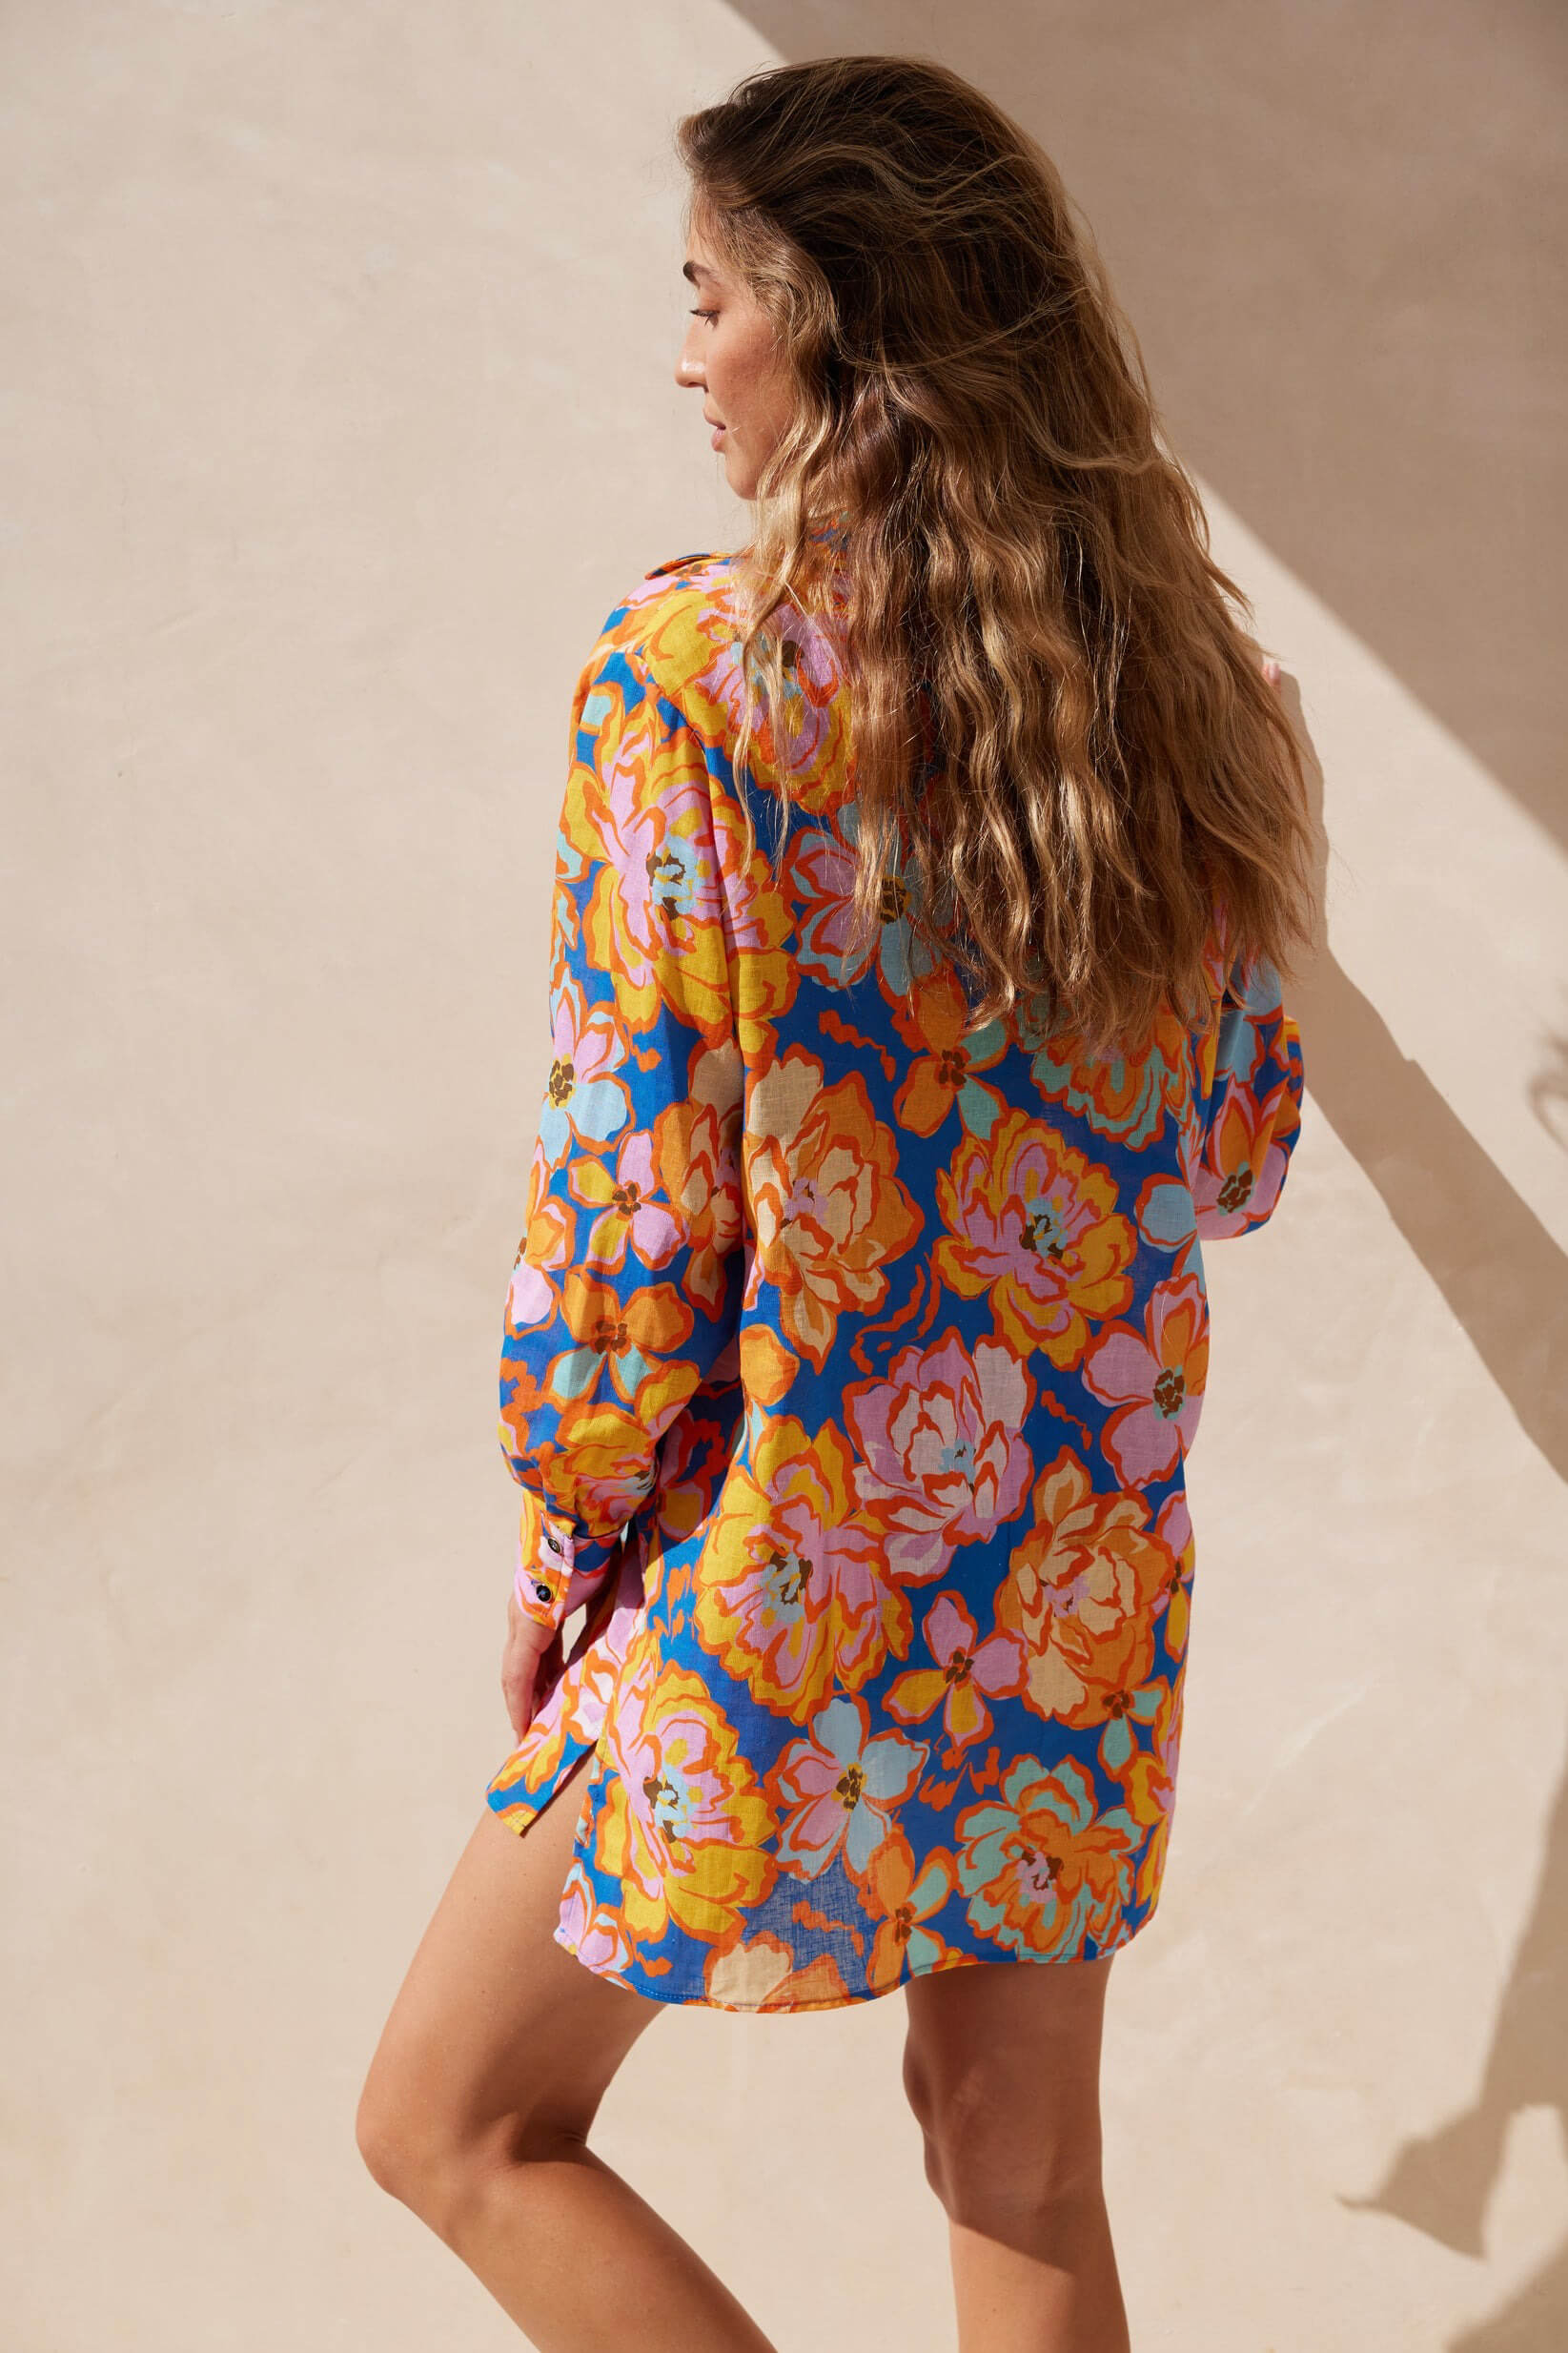 Aquari solara shirt dress in Santorini floral